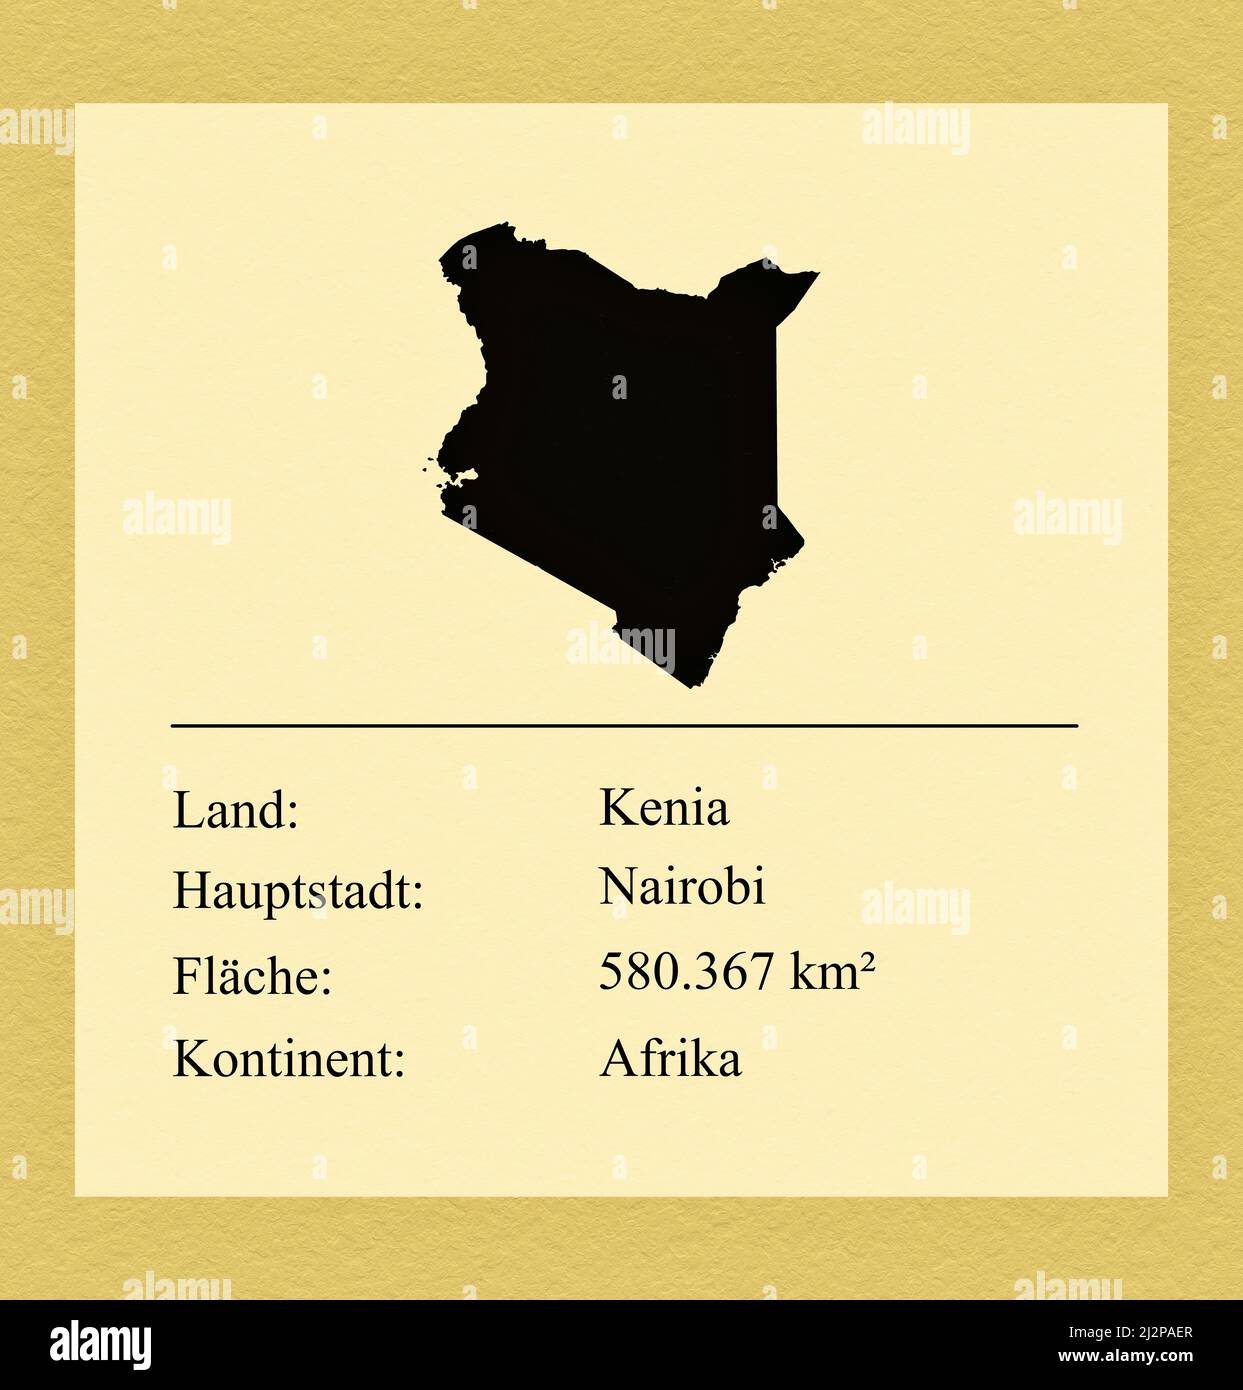 Umrisse des Landes Kenia, darunter ein kleiner Steckbrief mit Ländernamen, Hauptstadt, Fläche und Kontinent Foto de stock